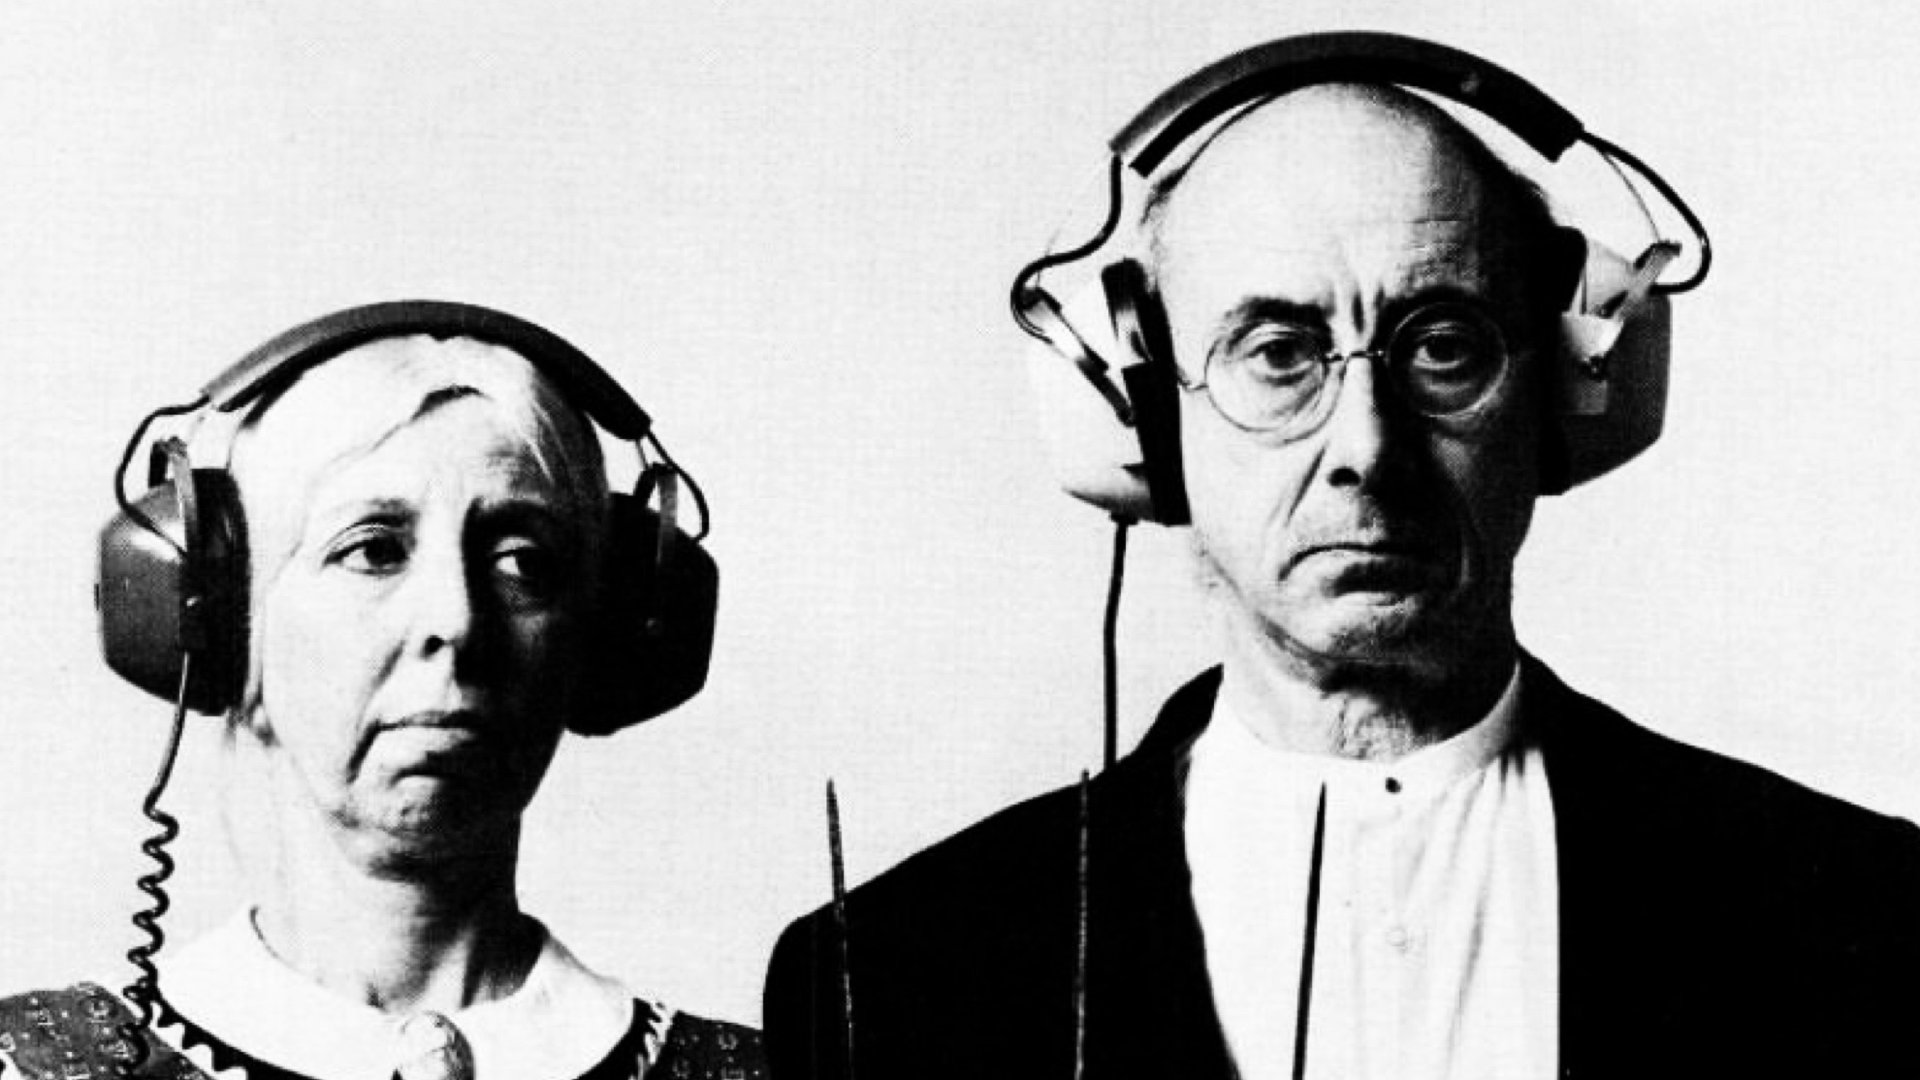 реклама RCA 197, изображающая двух человек в наушниках